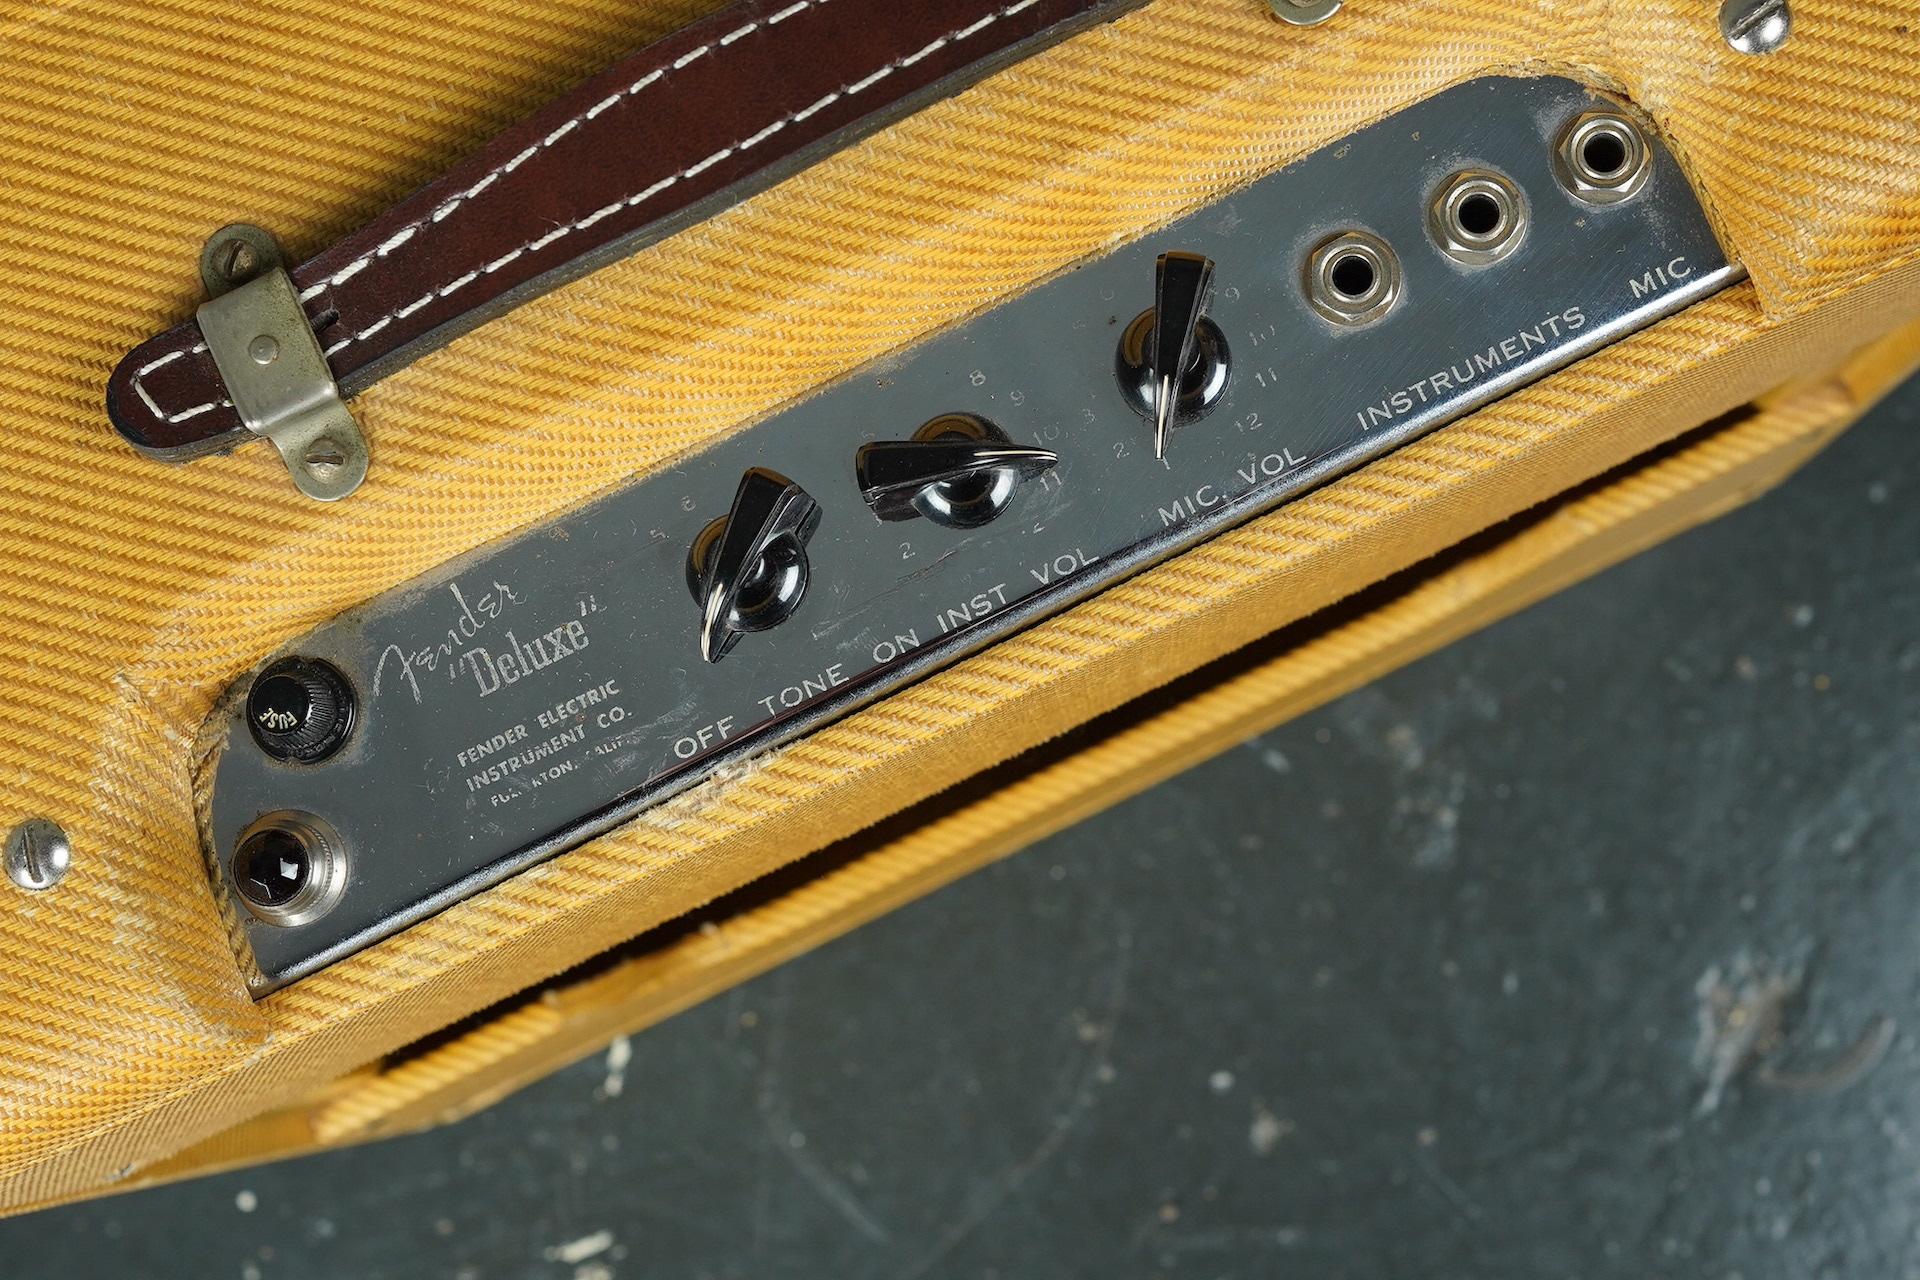 1950 Fender Tweed Deluxe TV Front Amplifier